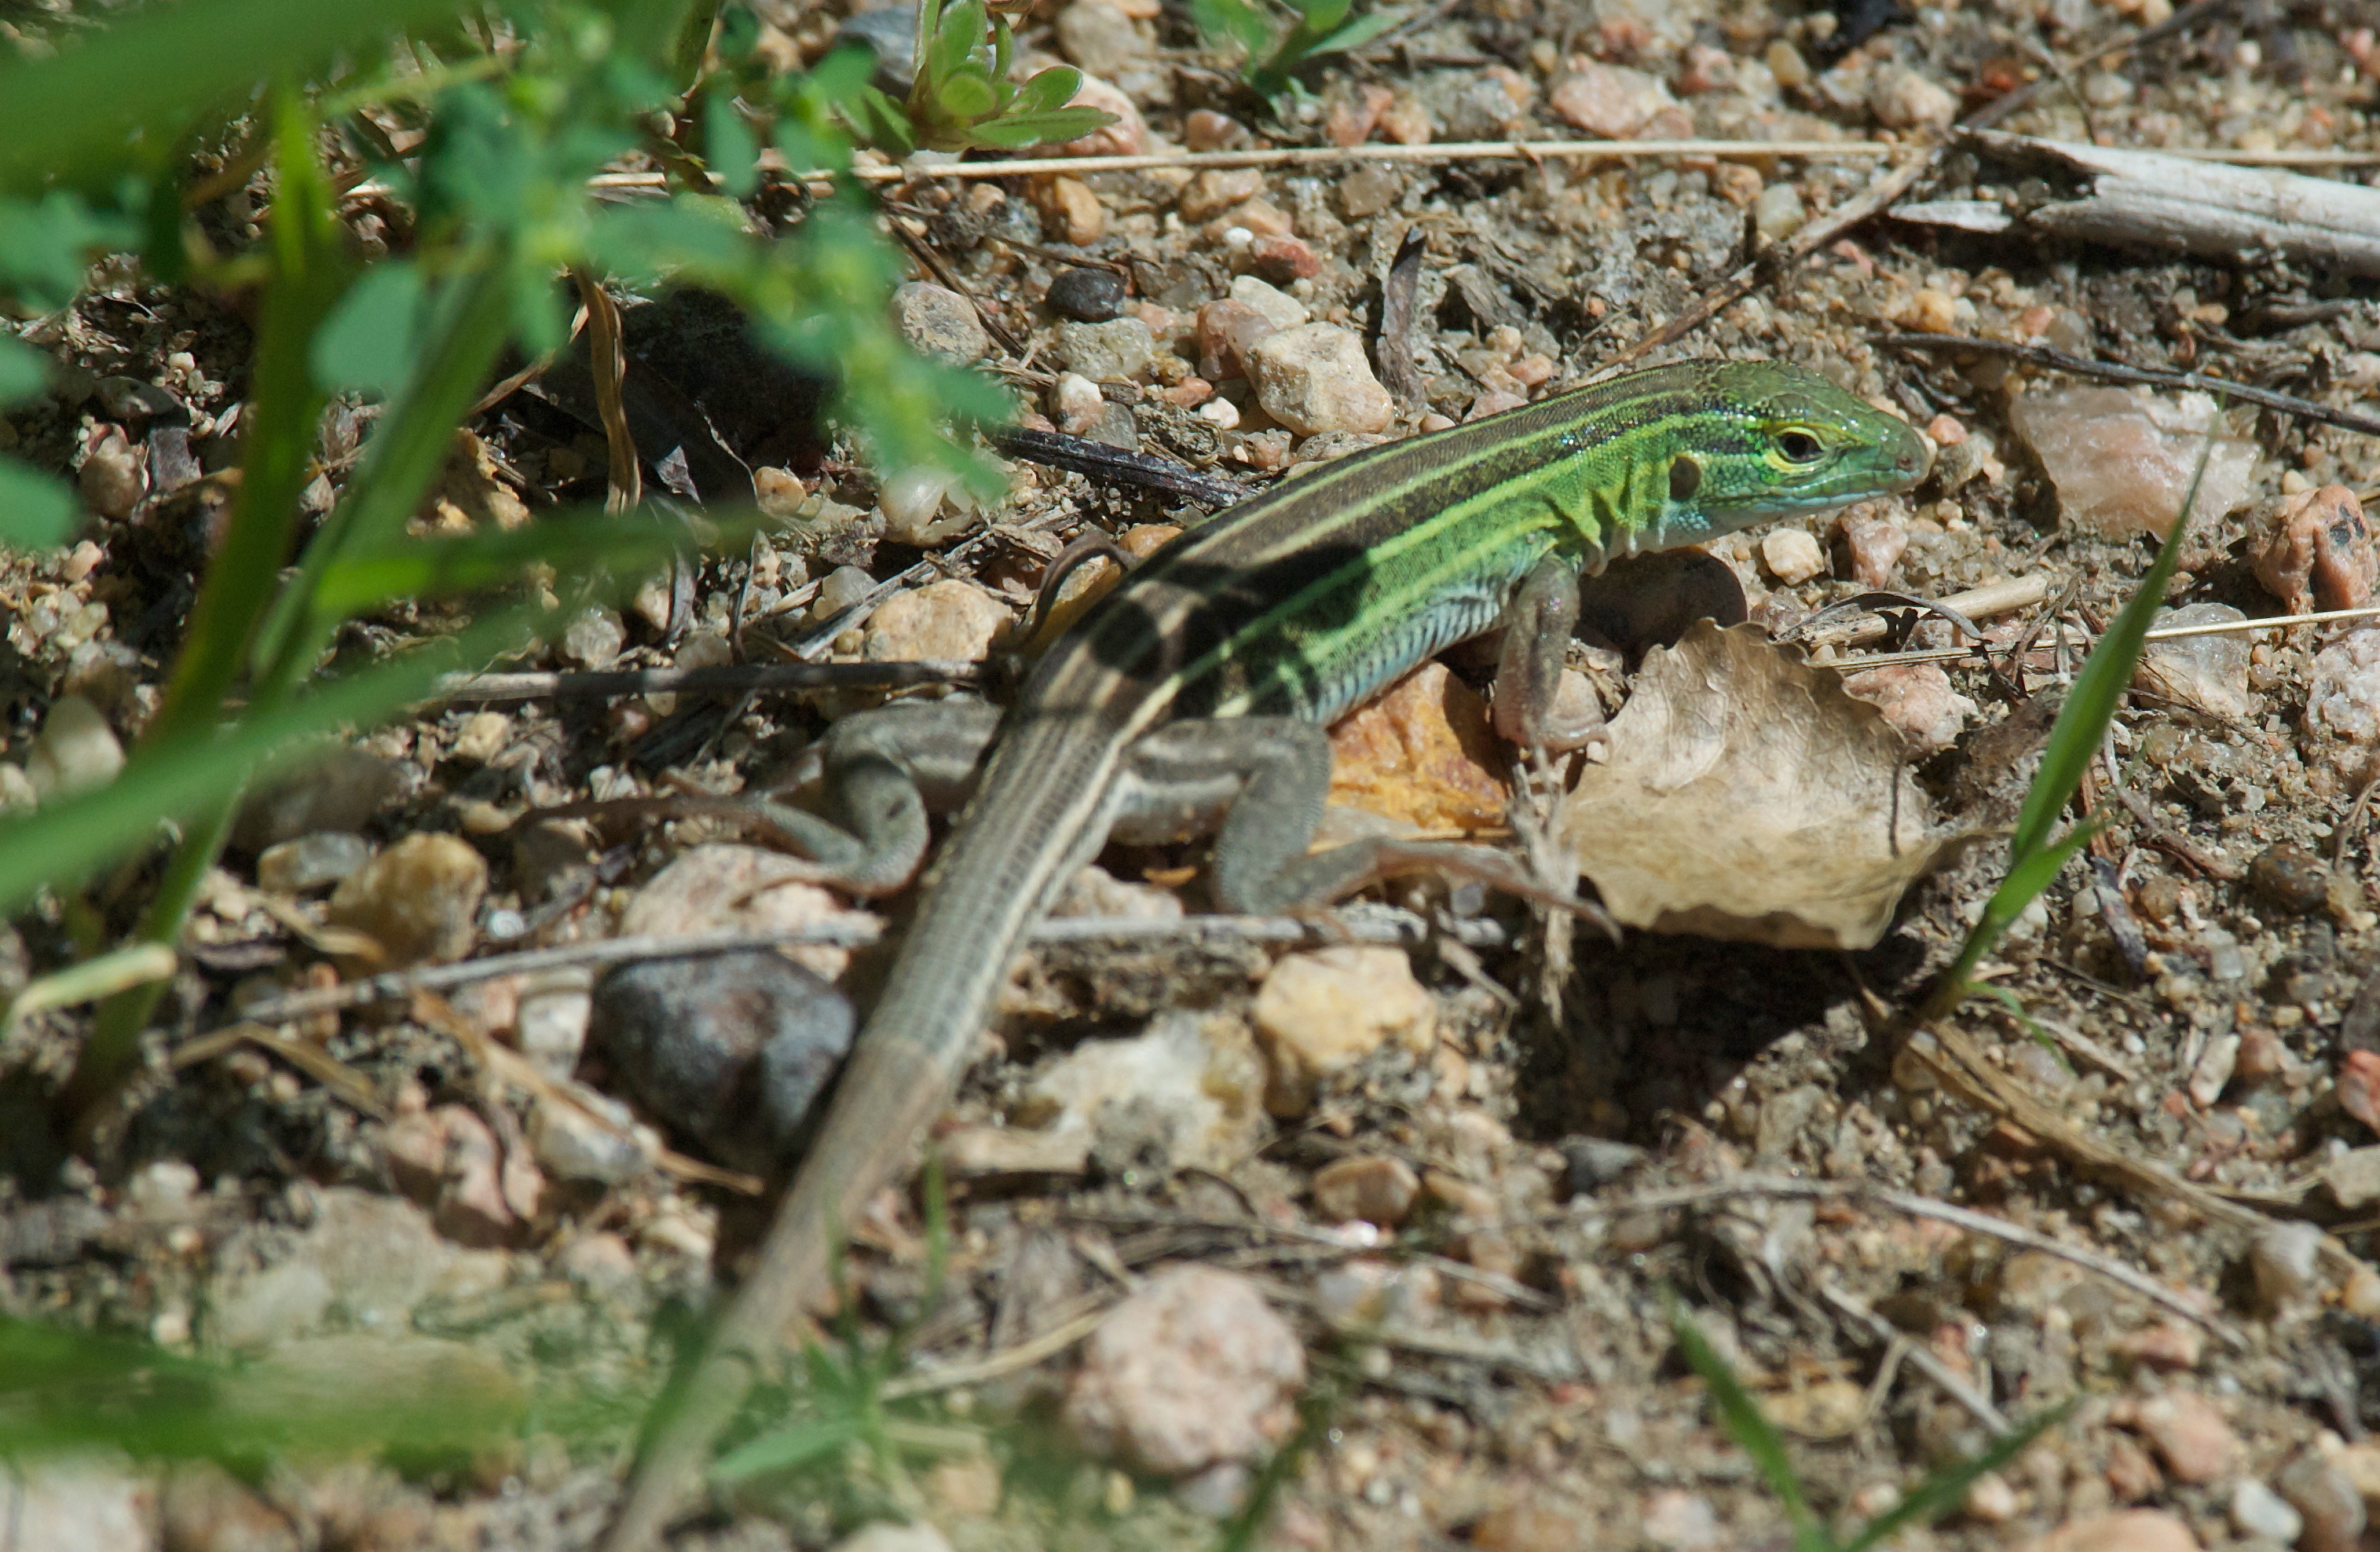 Six-Lined Racerunner Lizard